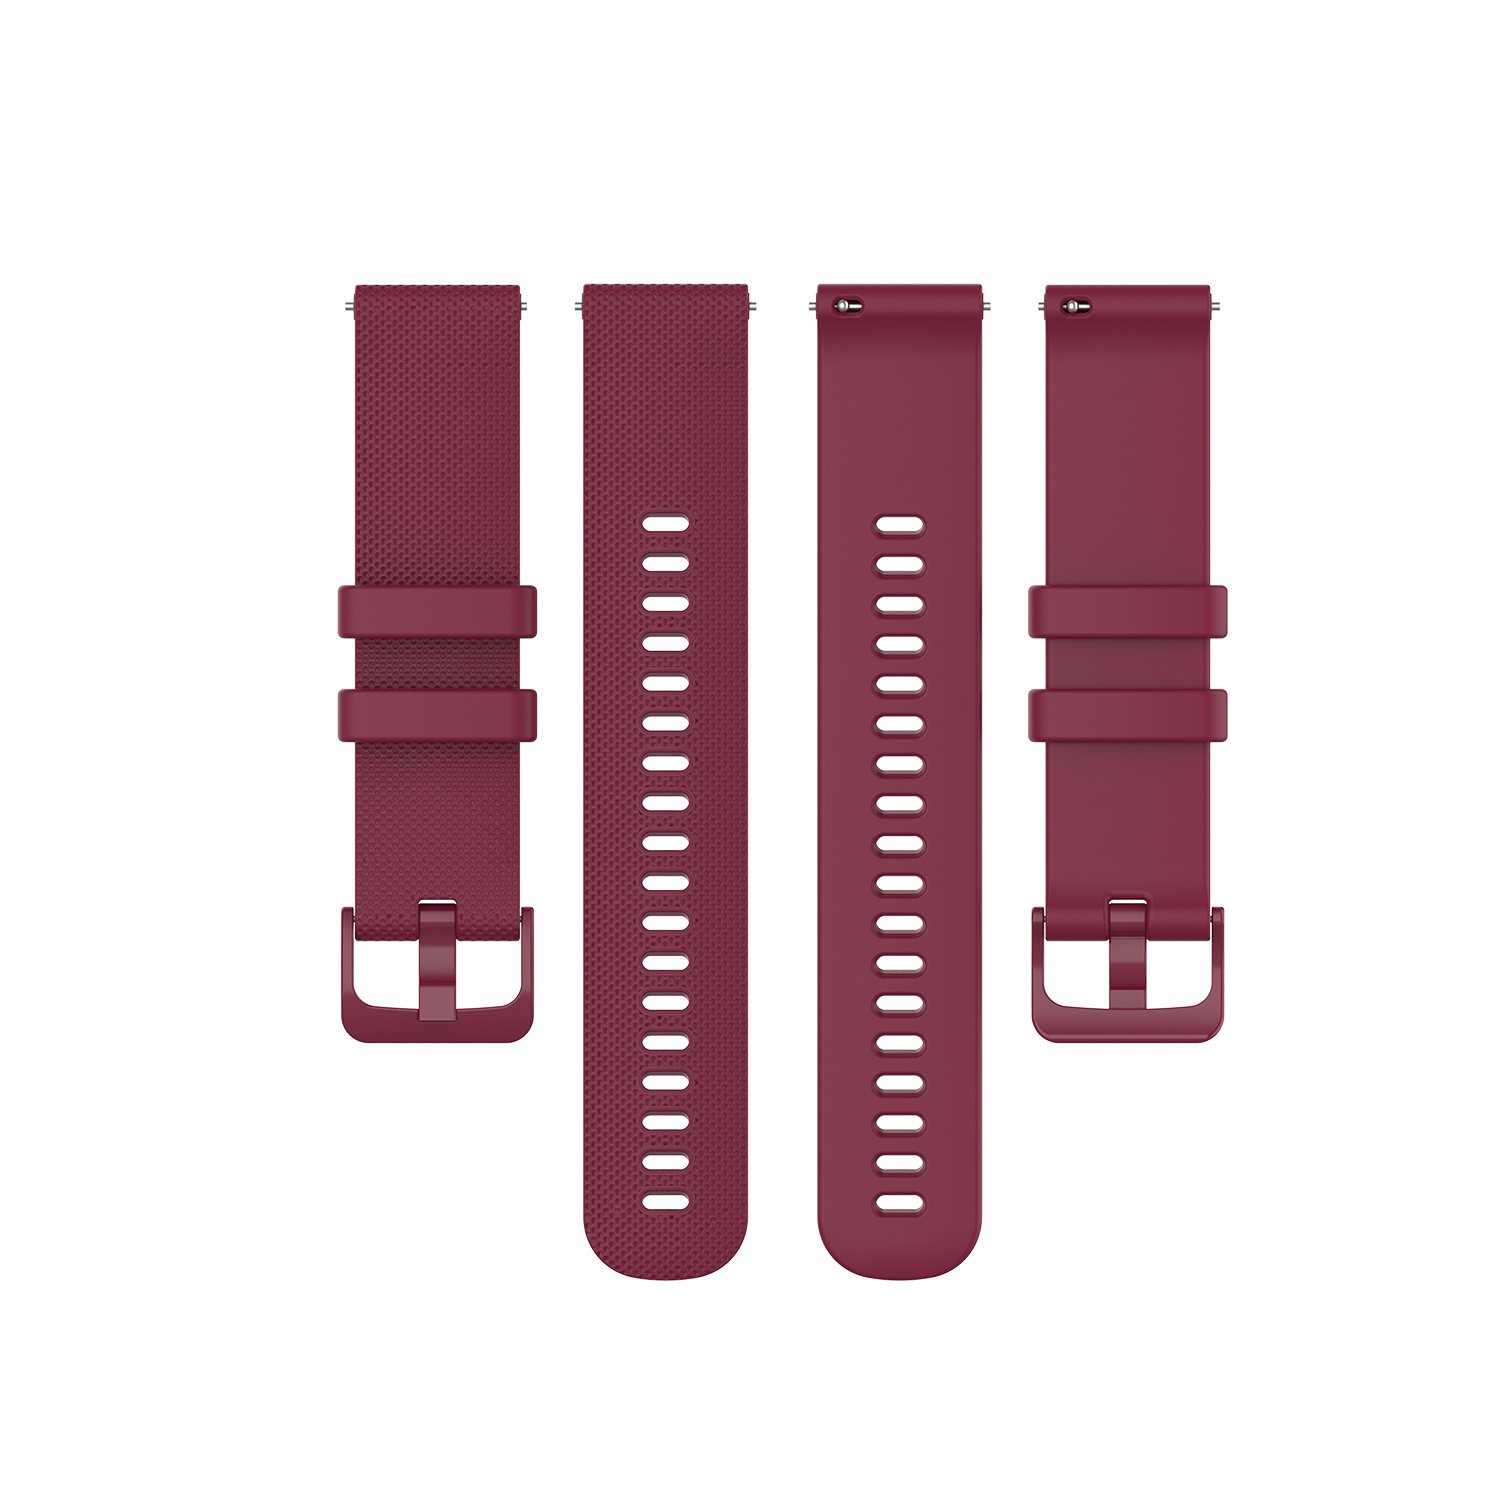 Cinturino sport con fibbia per Samsung Galaxy Watch - rosso vino